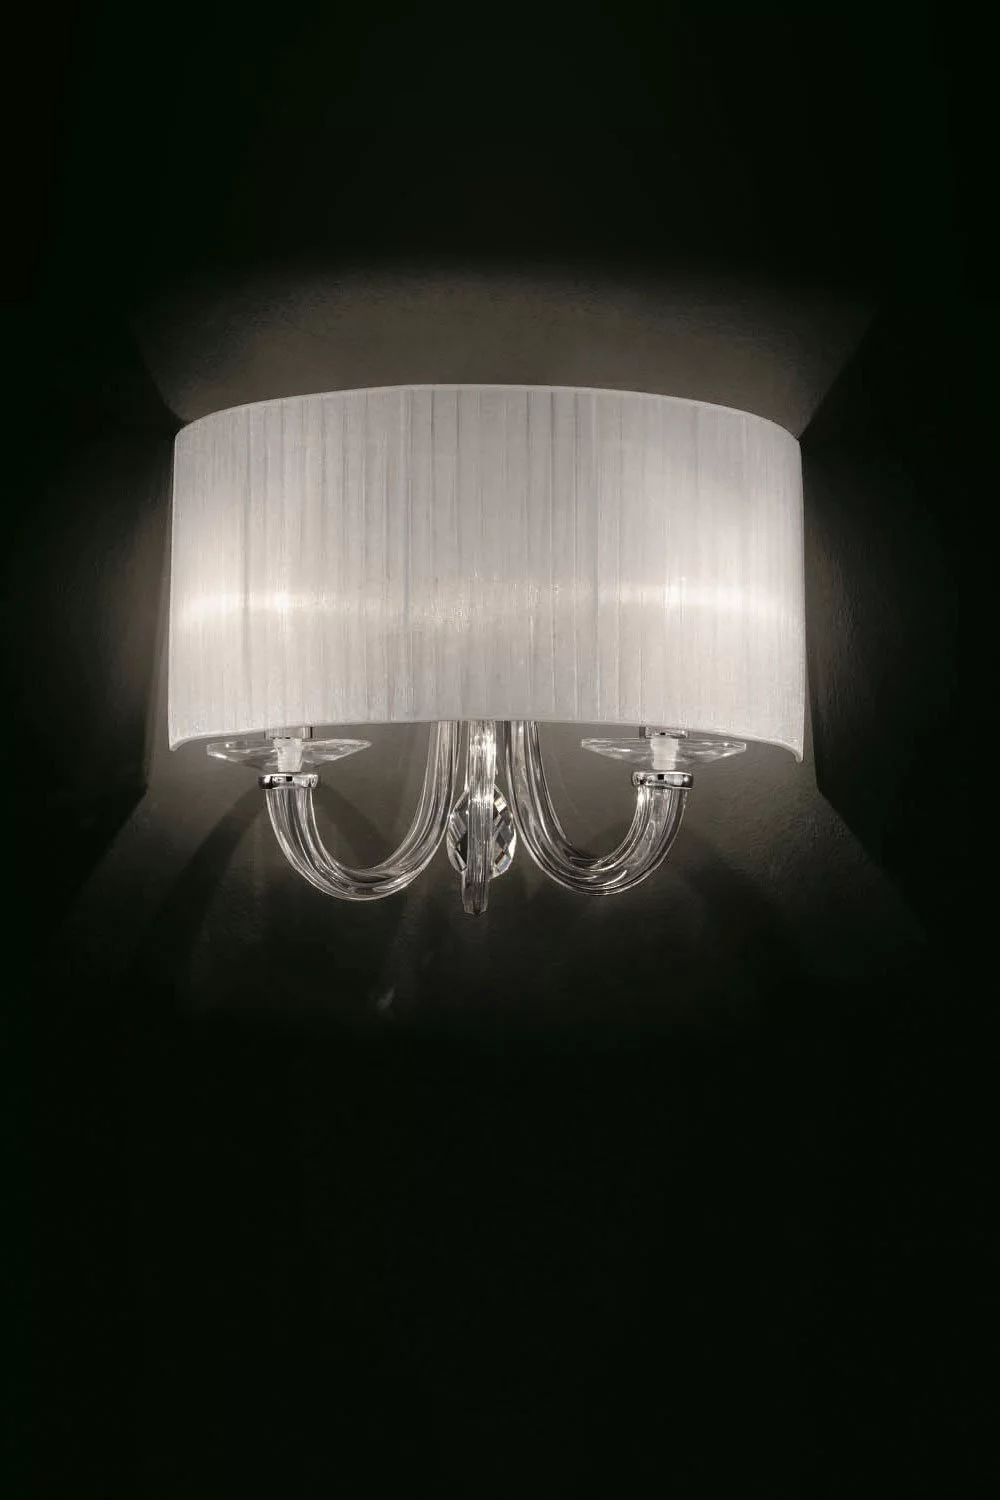   
                        Бра IDEAL LUX (Італія) 46147    
                         у стилі модерн.  
                        Тип джерела світла: cвітлодіодні led, енергозберігаючі, розжарювання.                                                 Кольори плафонів і підвісок: білий.                         Матеріал: тканина, скло, кришталь.                          фото 2